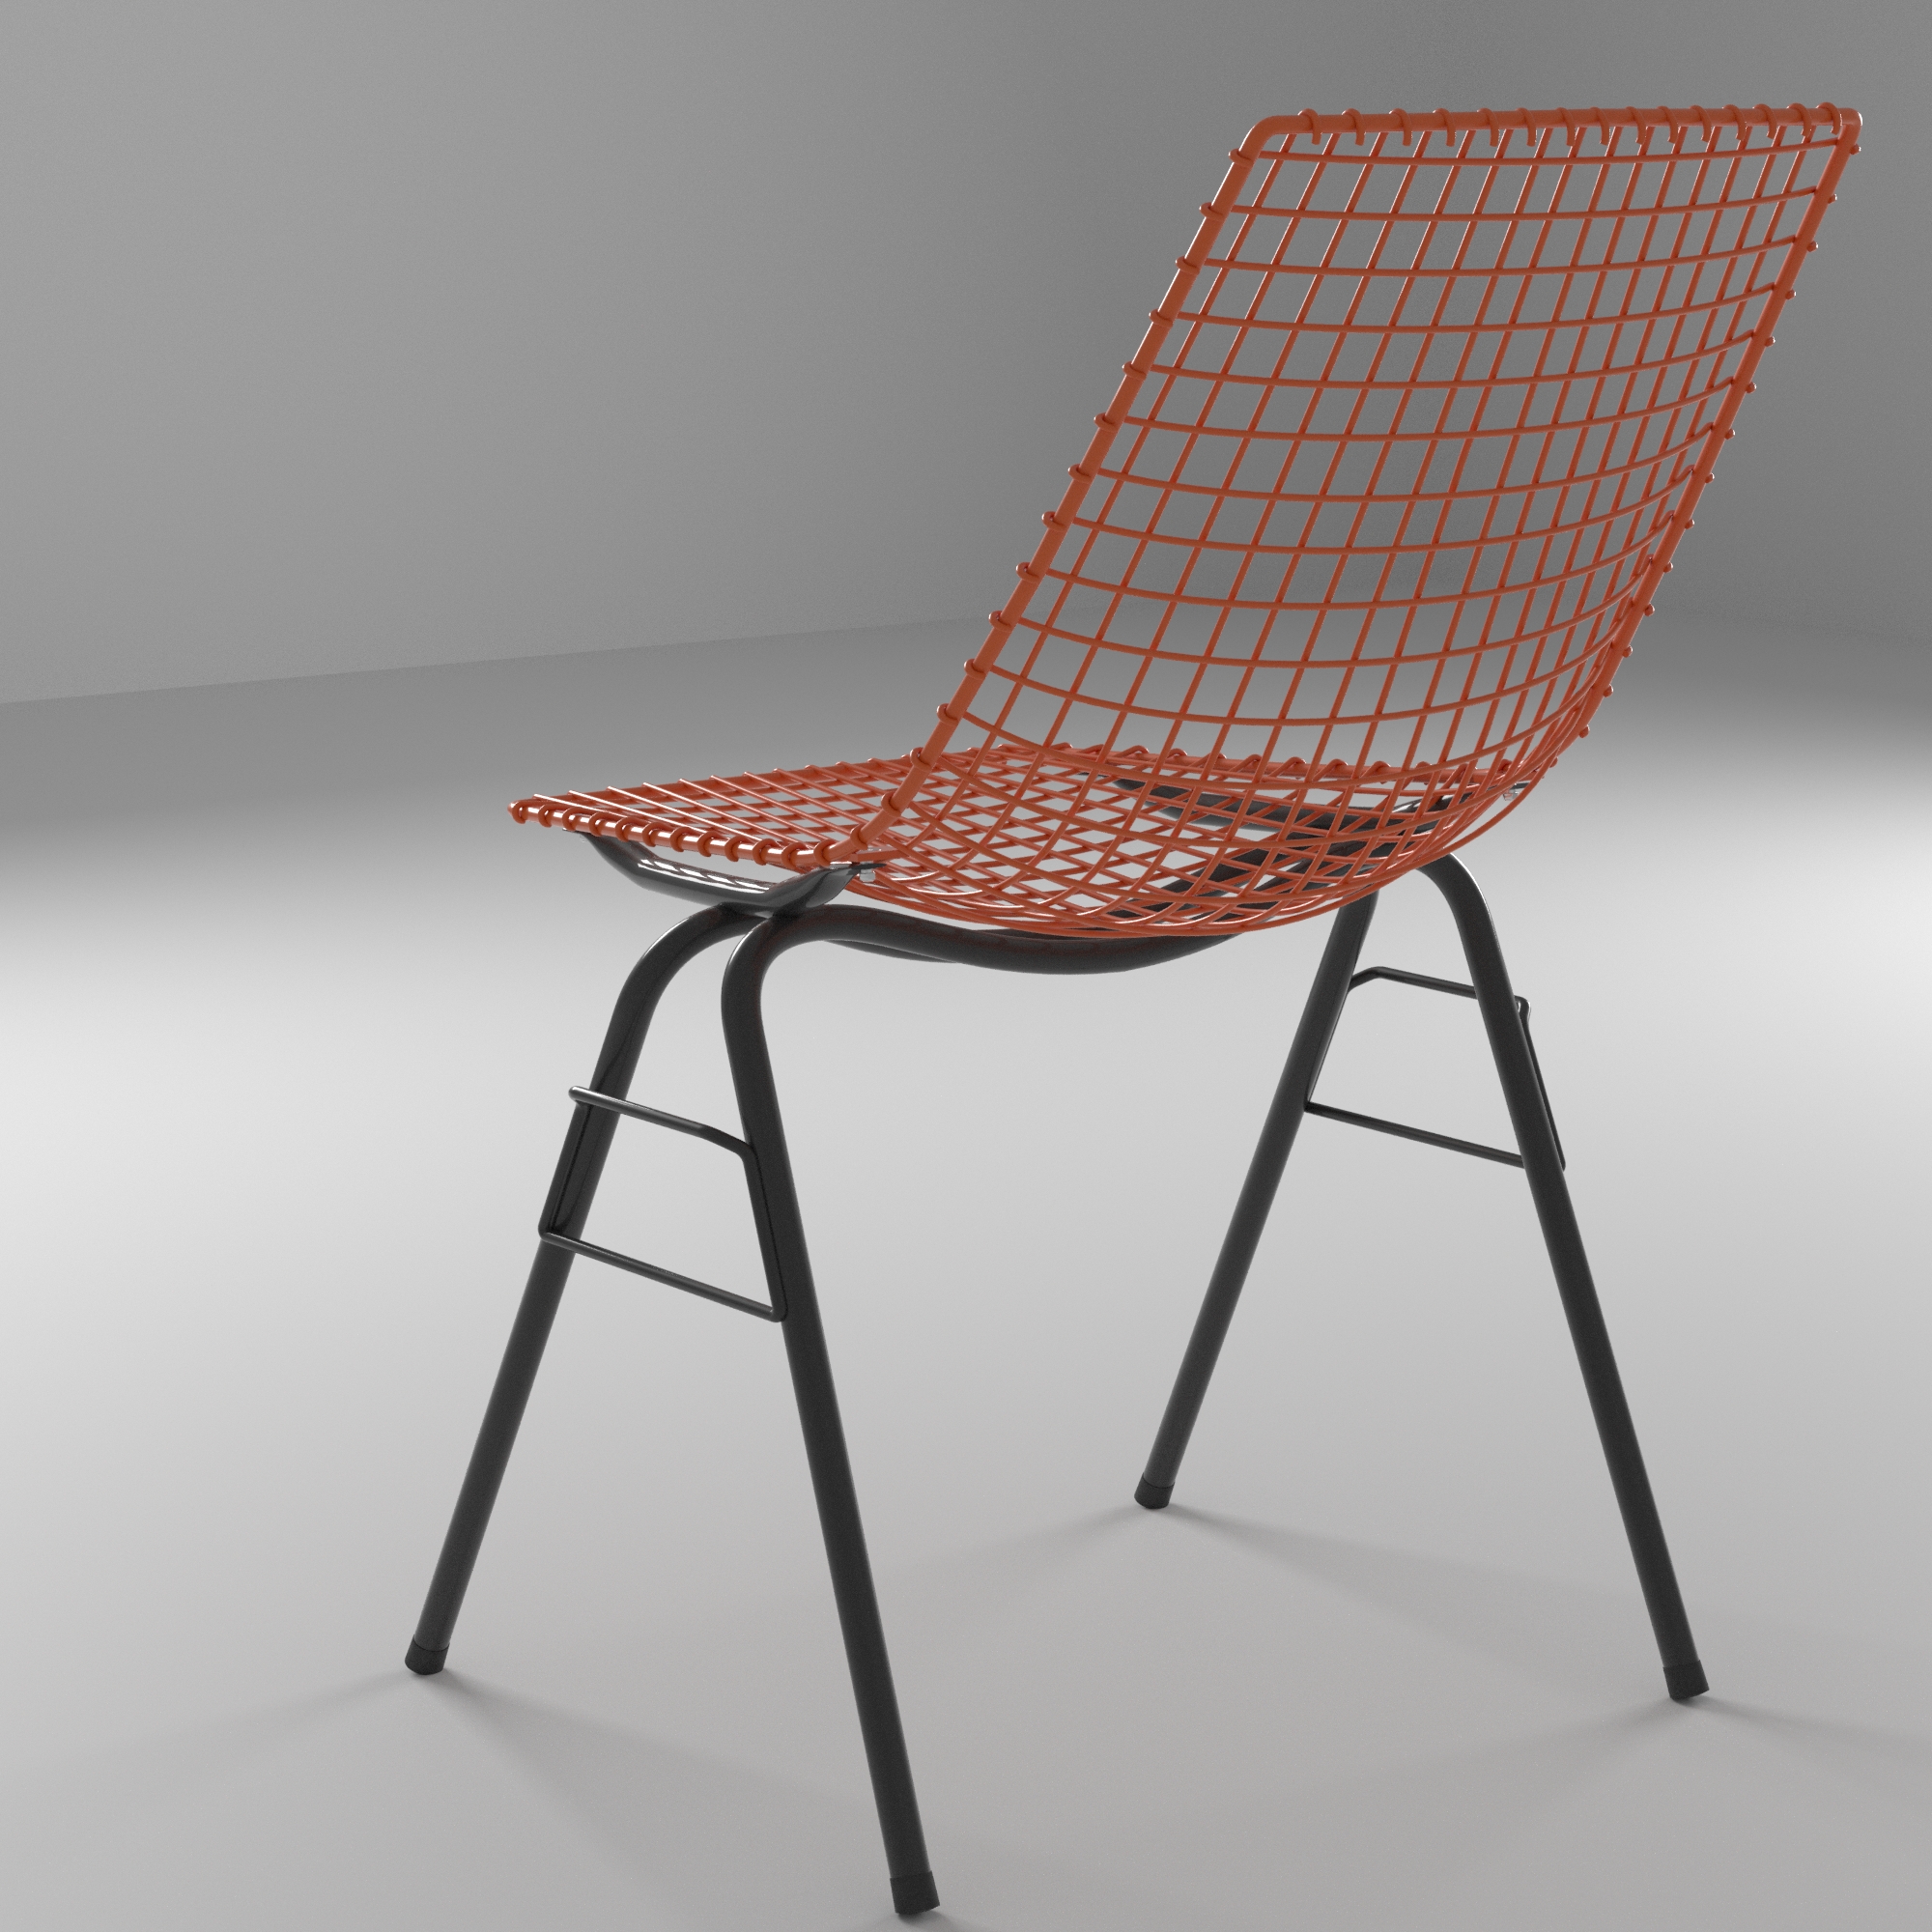 wizualizacja produktowa krzesła